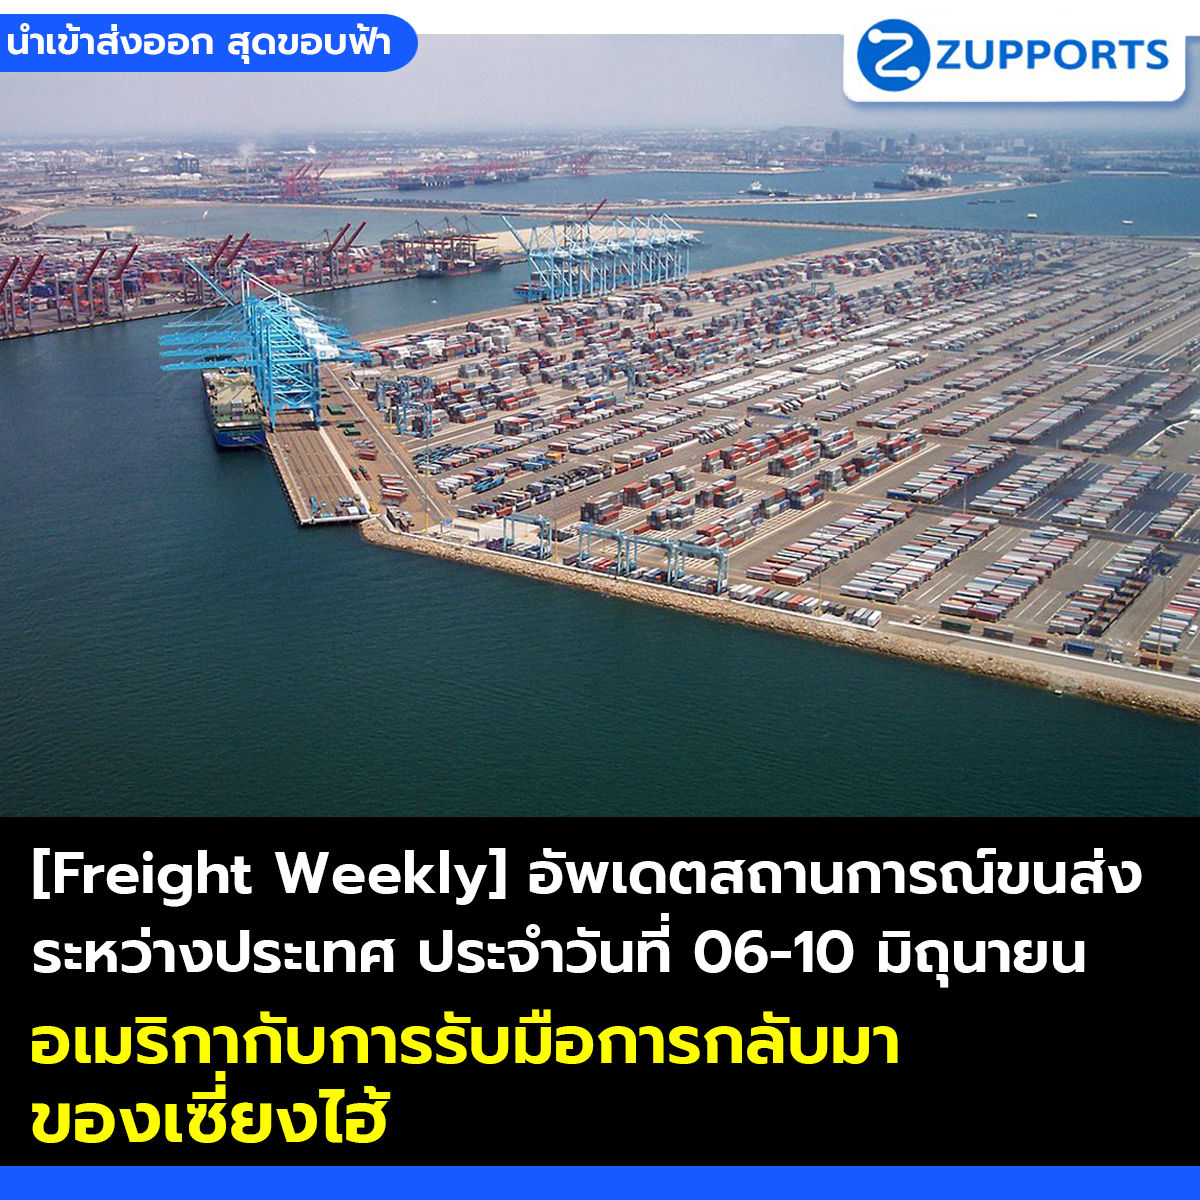 [Freight Weekly] อัพเดตสถานการณ์ขนส่งระหว่างประเทศ ประจำวันที่ 06-10 มิถุนายน 2565 กับ ZUPPORTS อเมริกากับการรับมือการกลับมาของเซี่ยงไฮ้